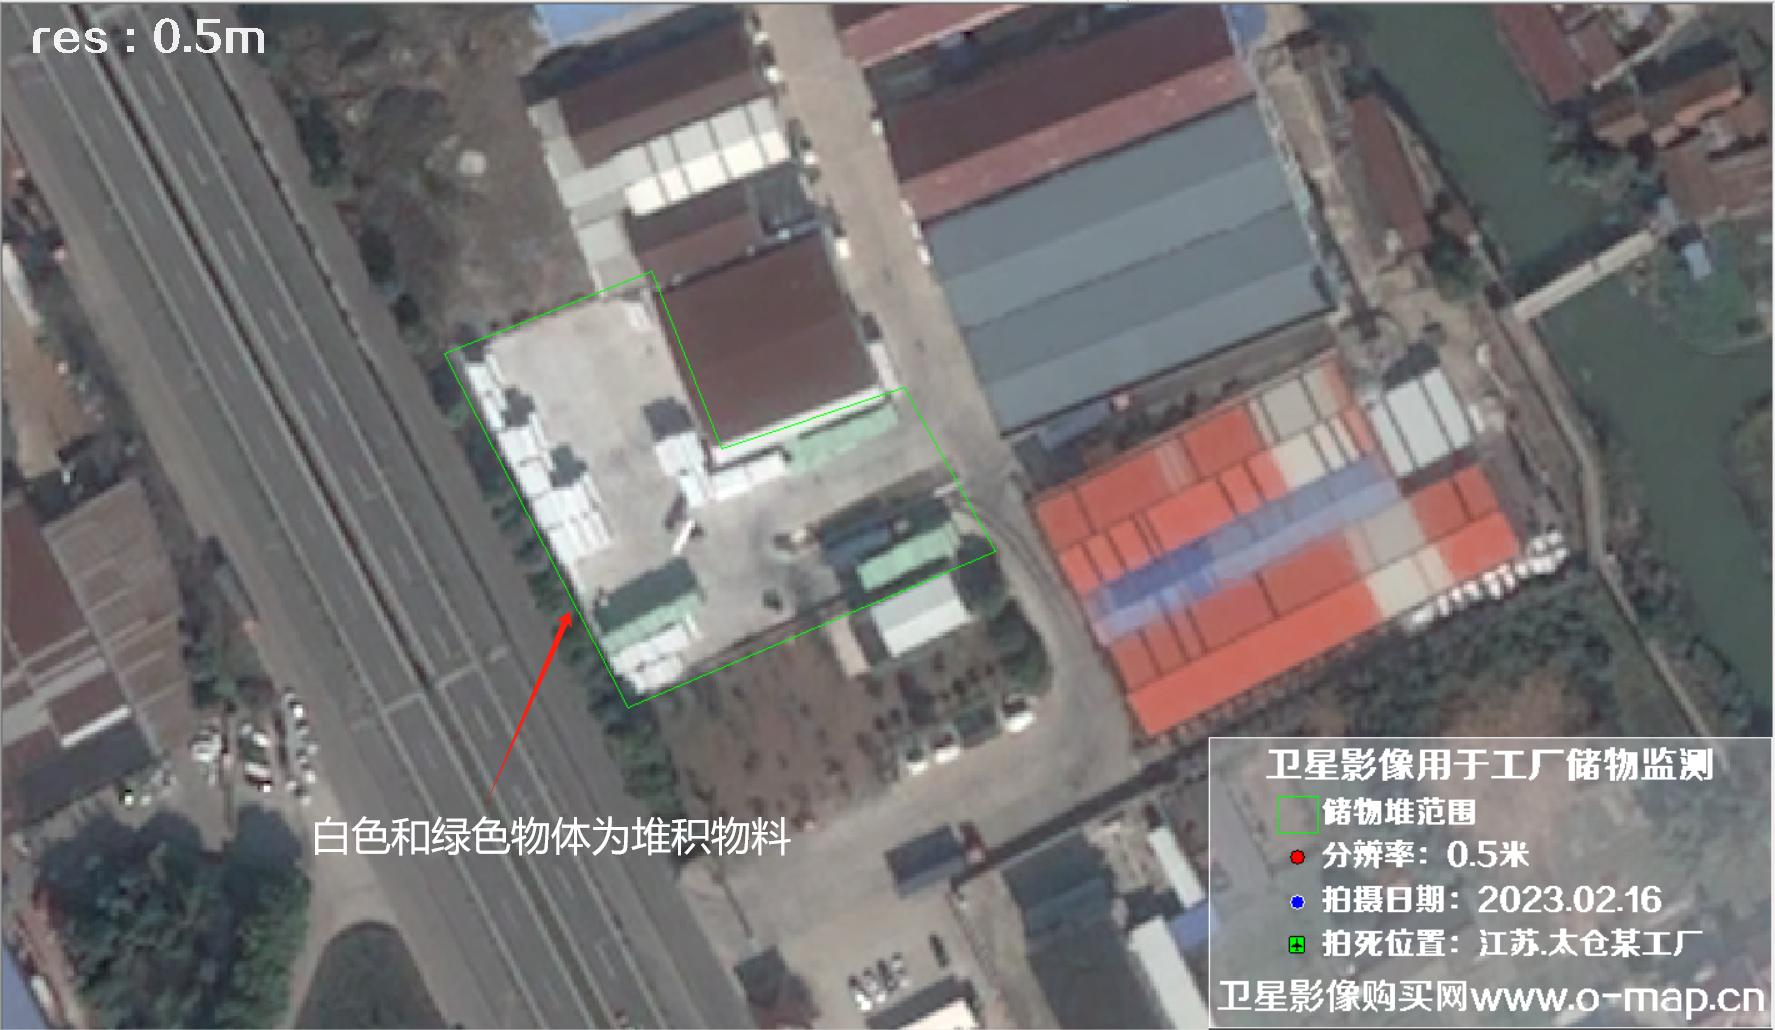 0.5米分辨率卫星图用于监测江苏省太仓市某工厂外仓货物的储存情况